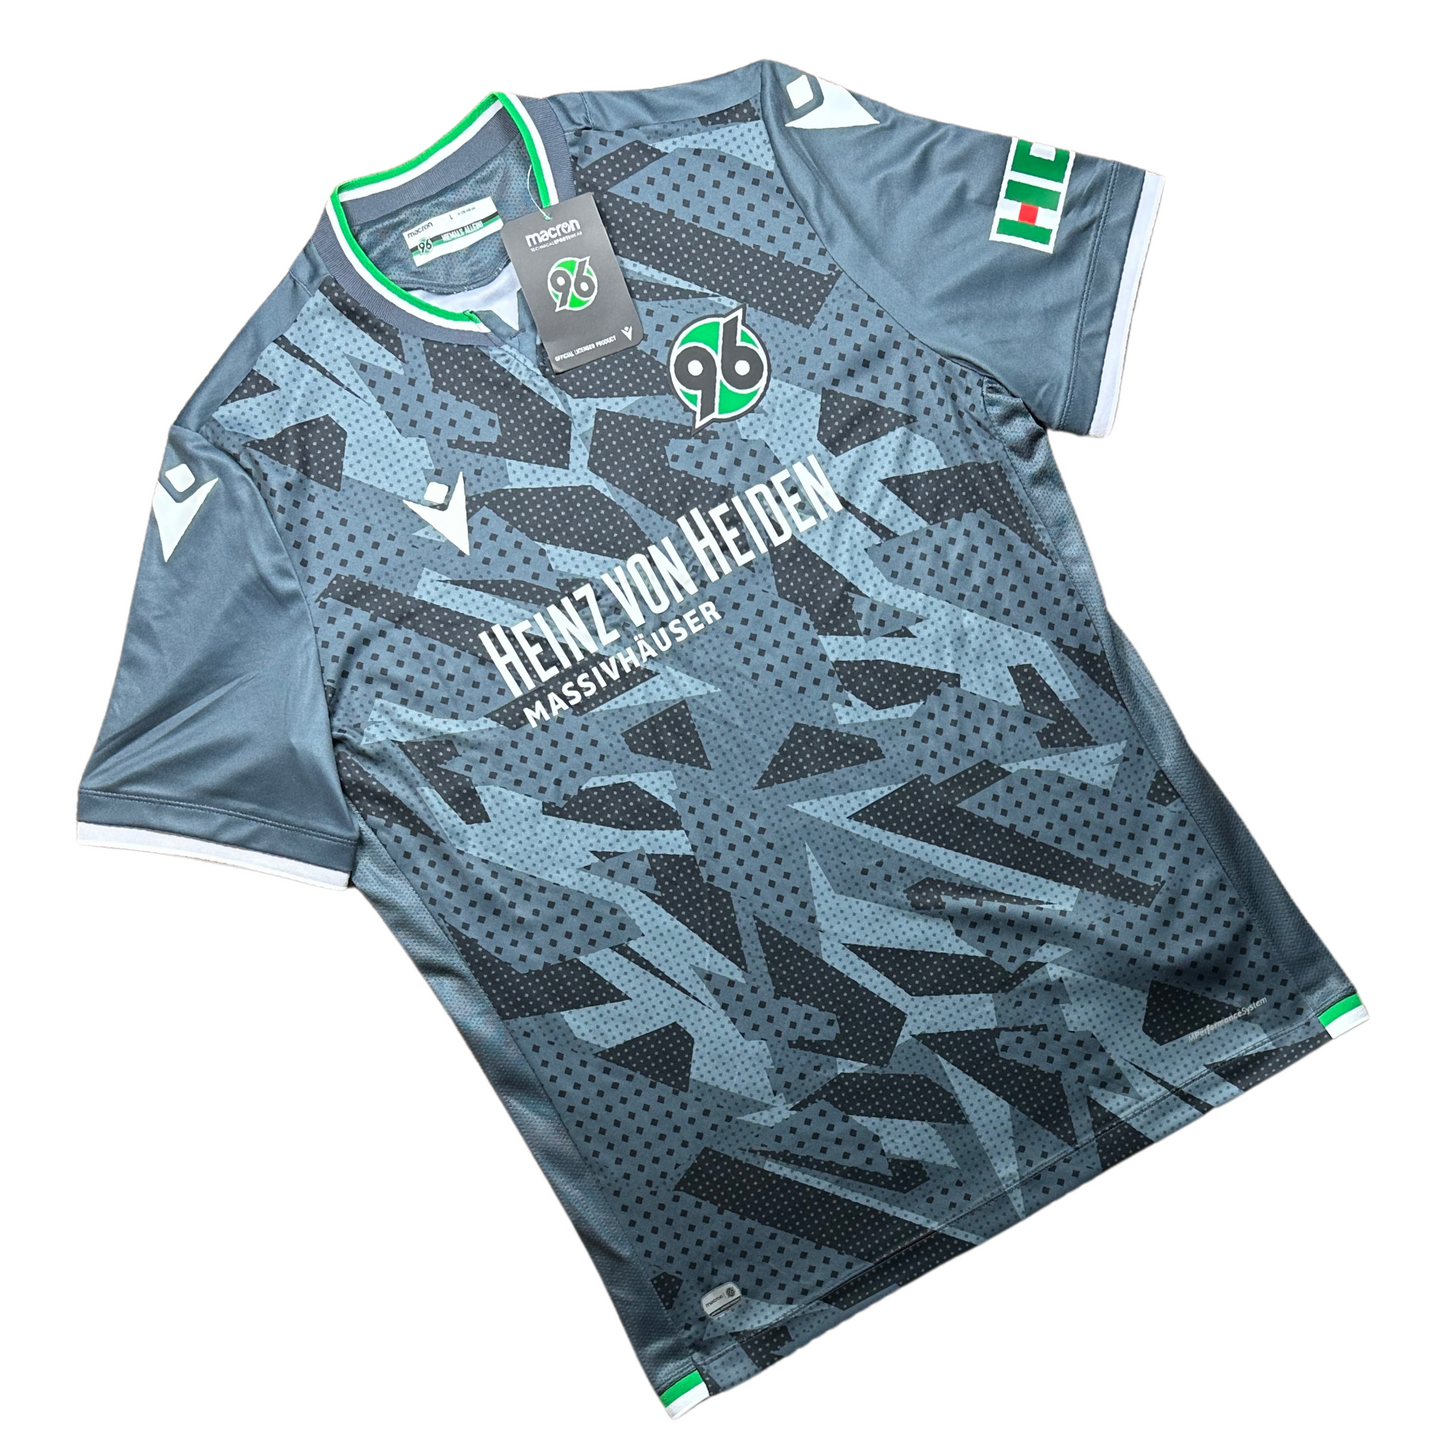 Hannover 96 2020/2021 Third Football Shirt